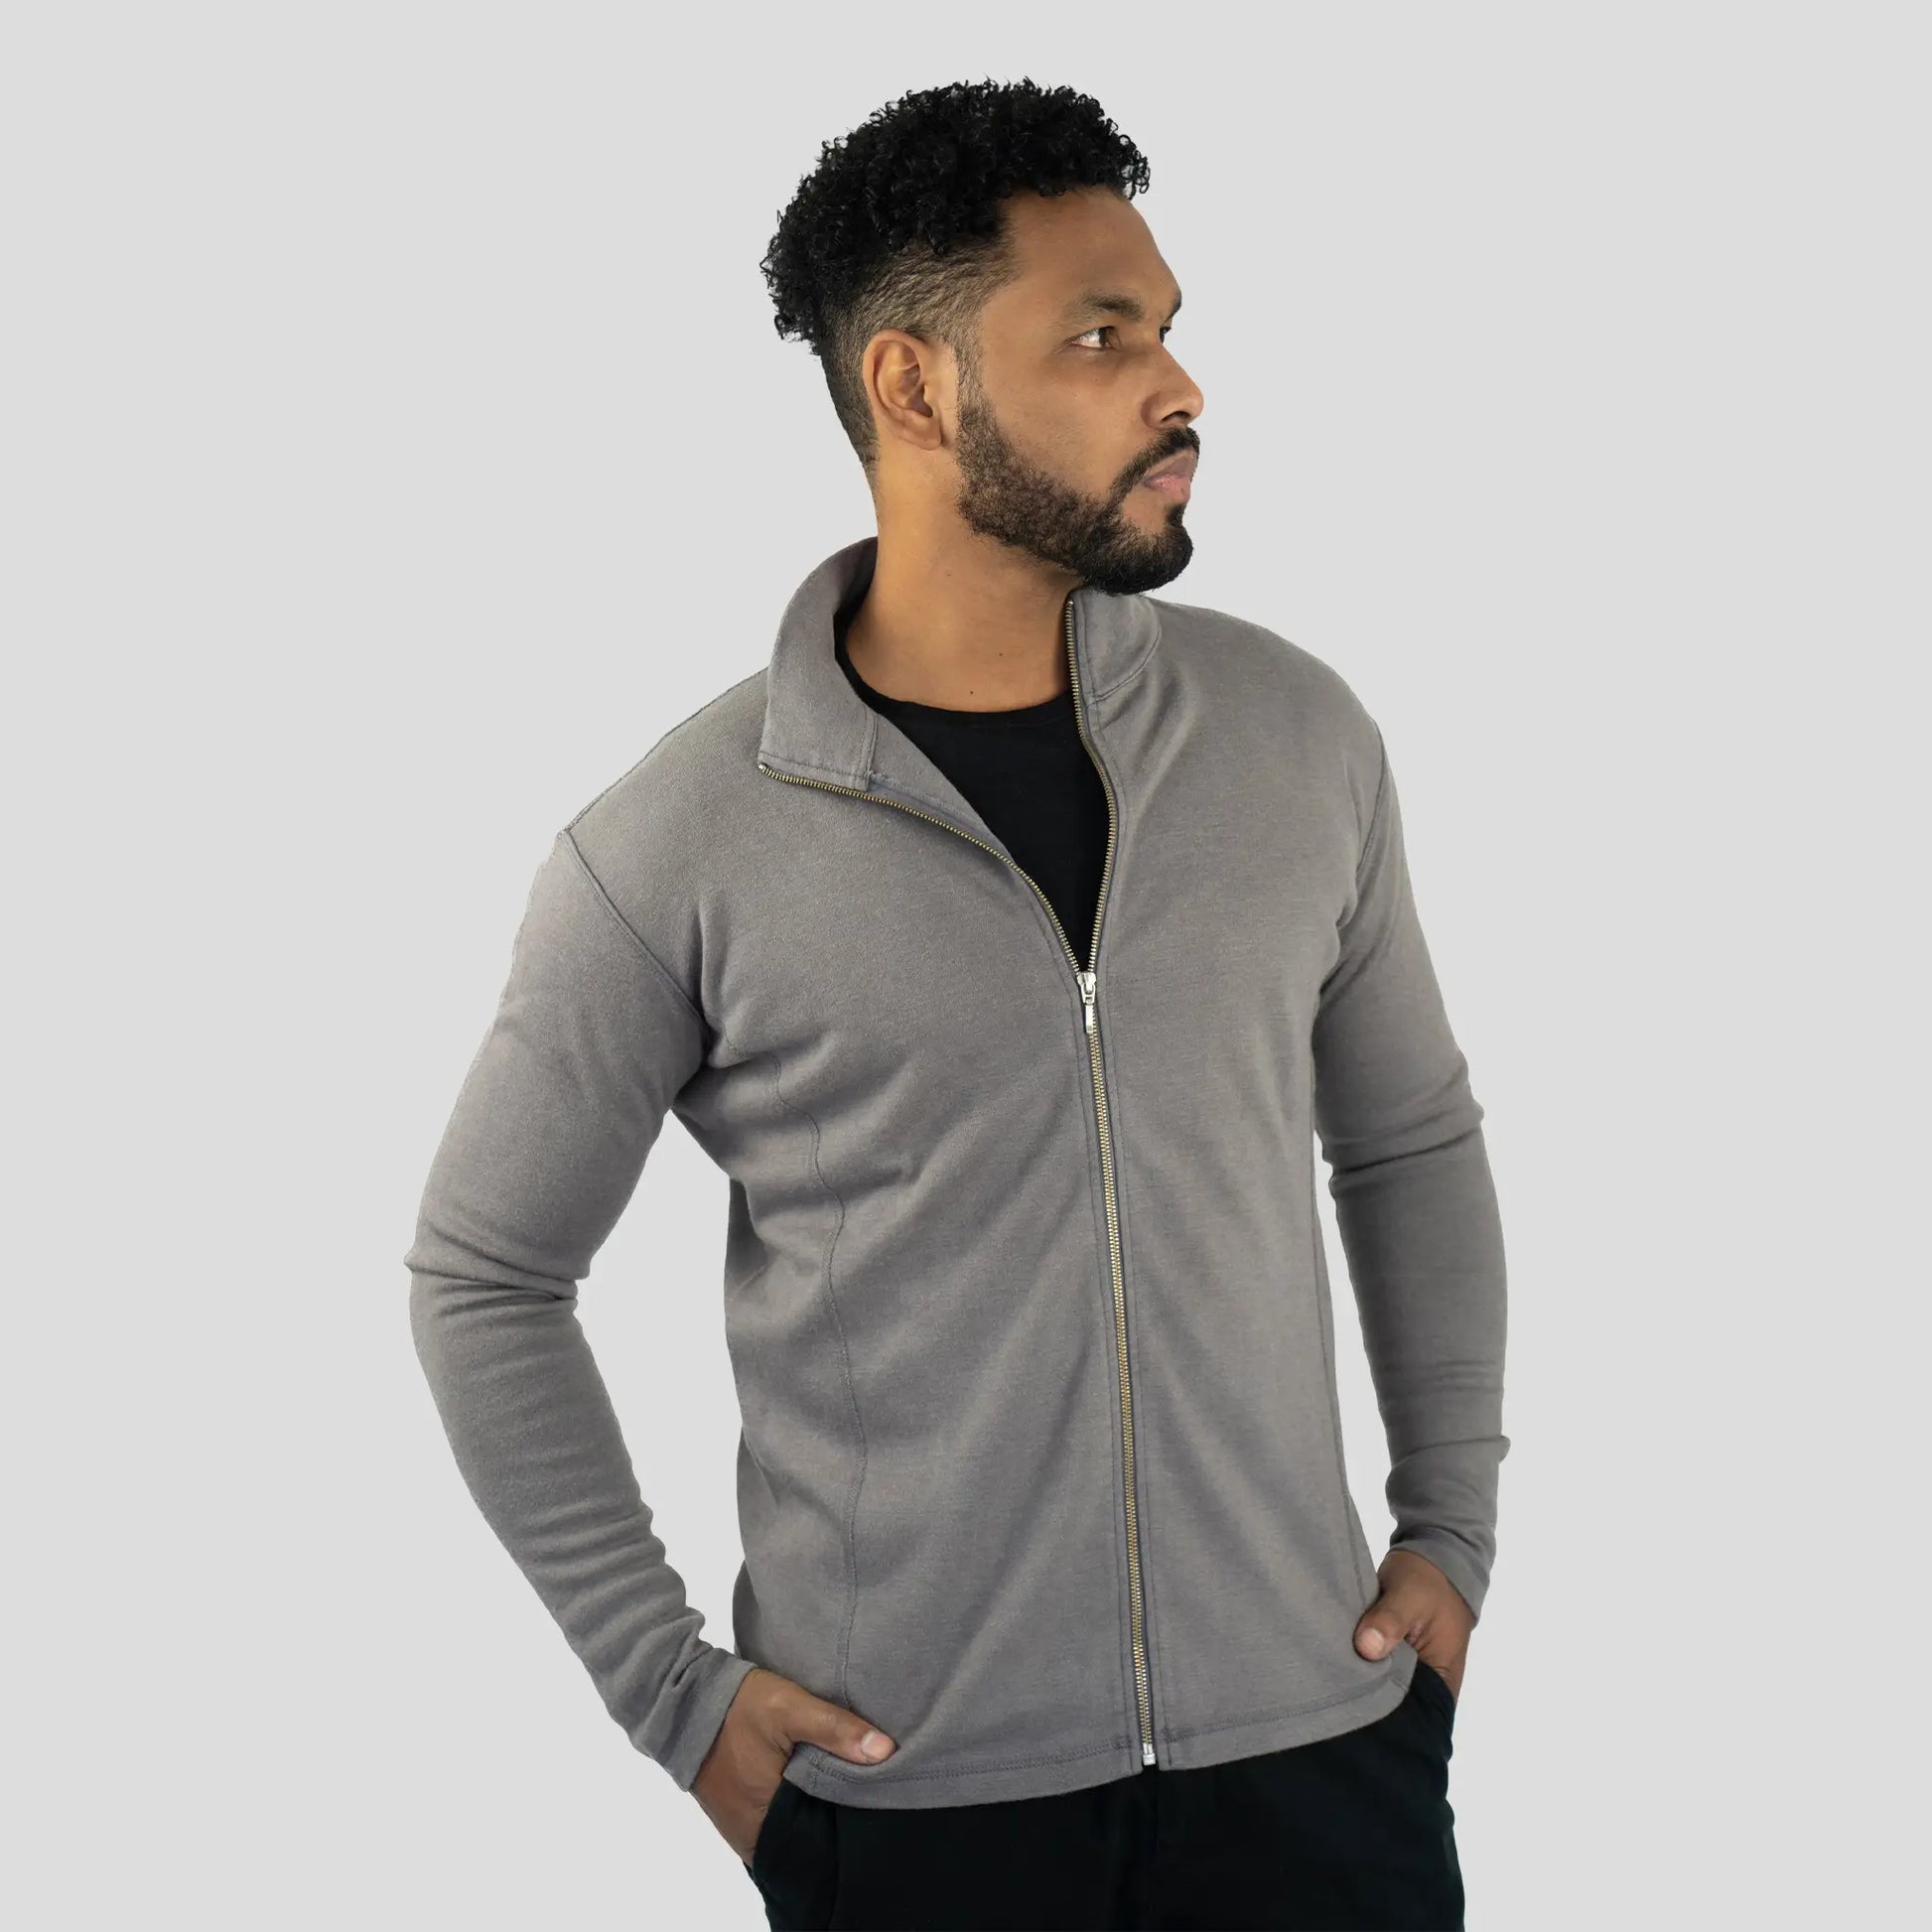 mens jacket color natural gray